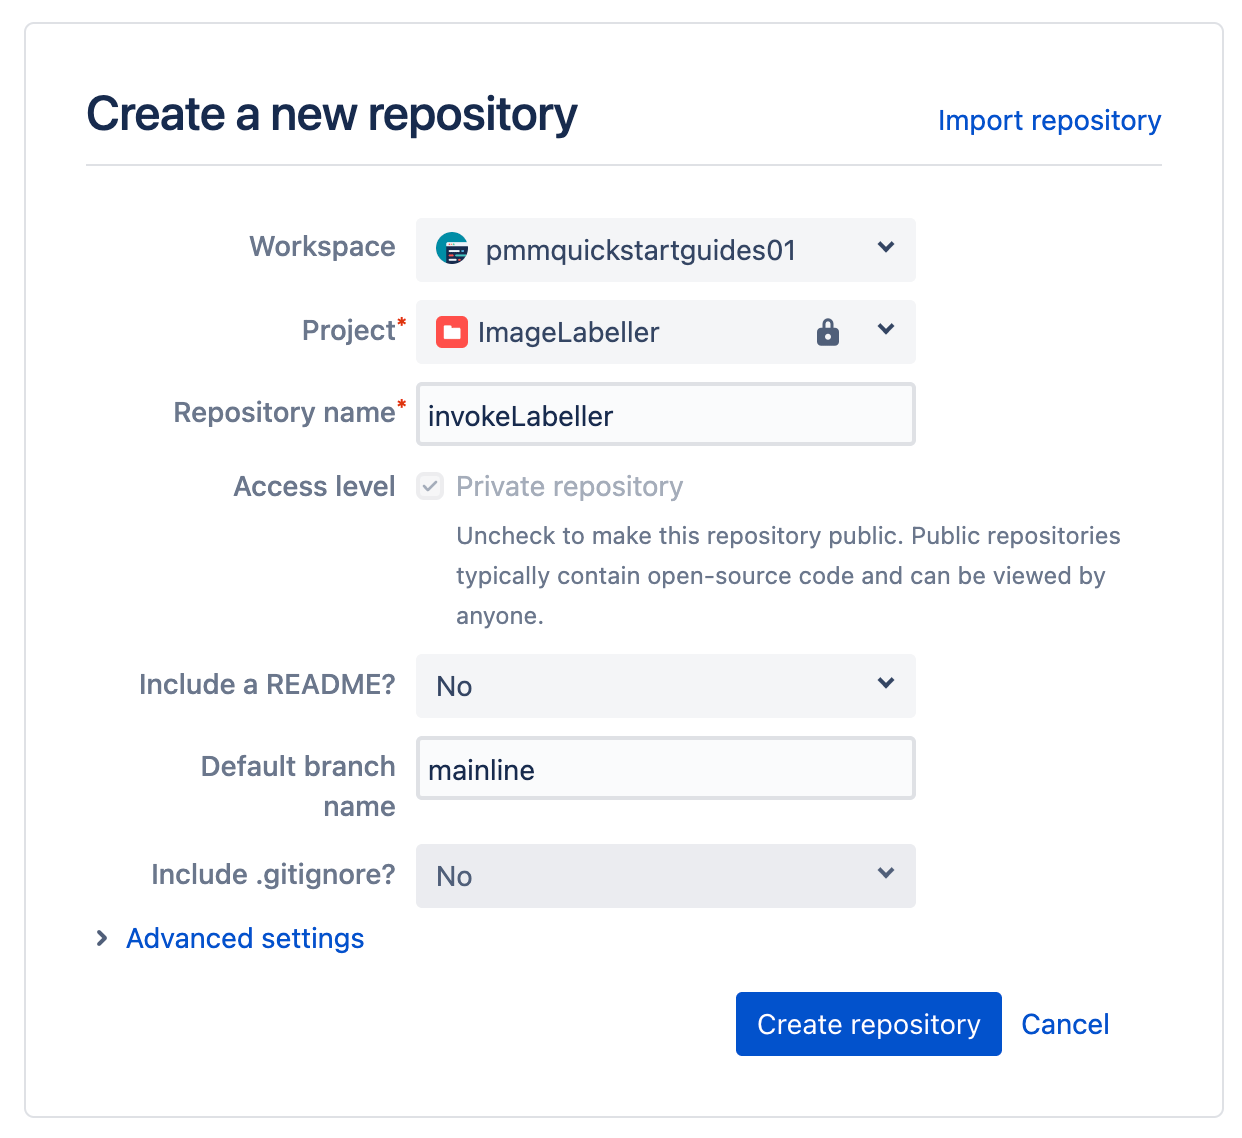 Maak een invokelabeller-repository aan in Bitbucket